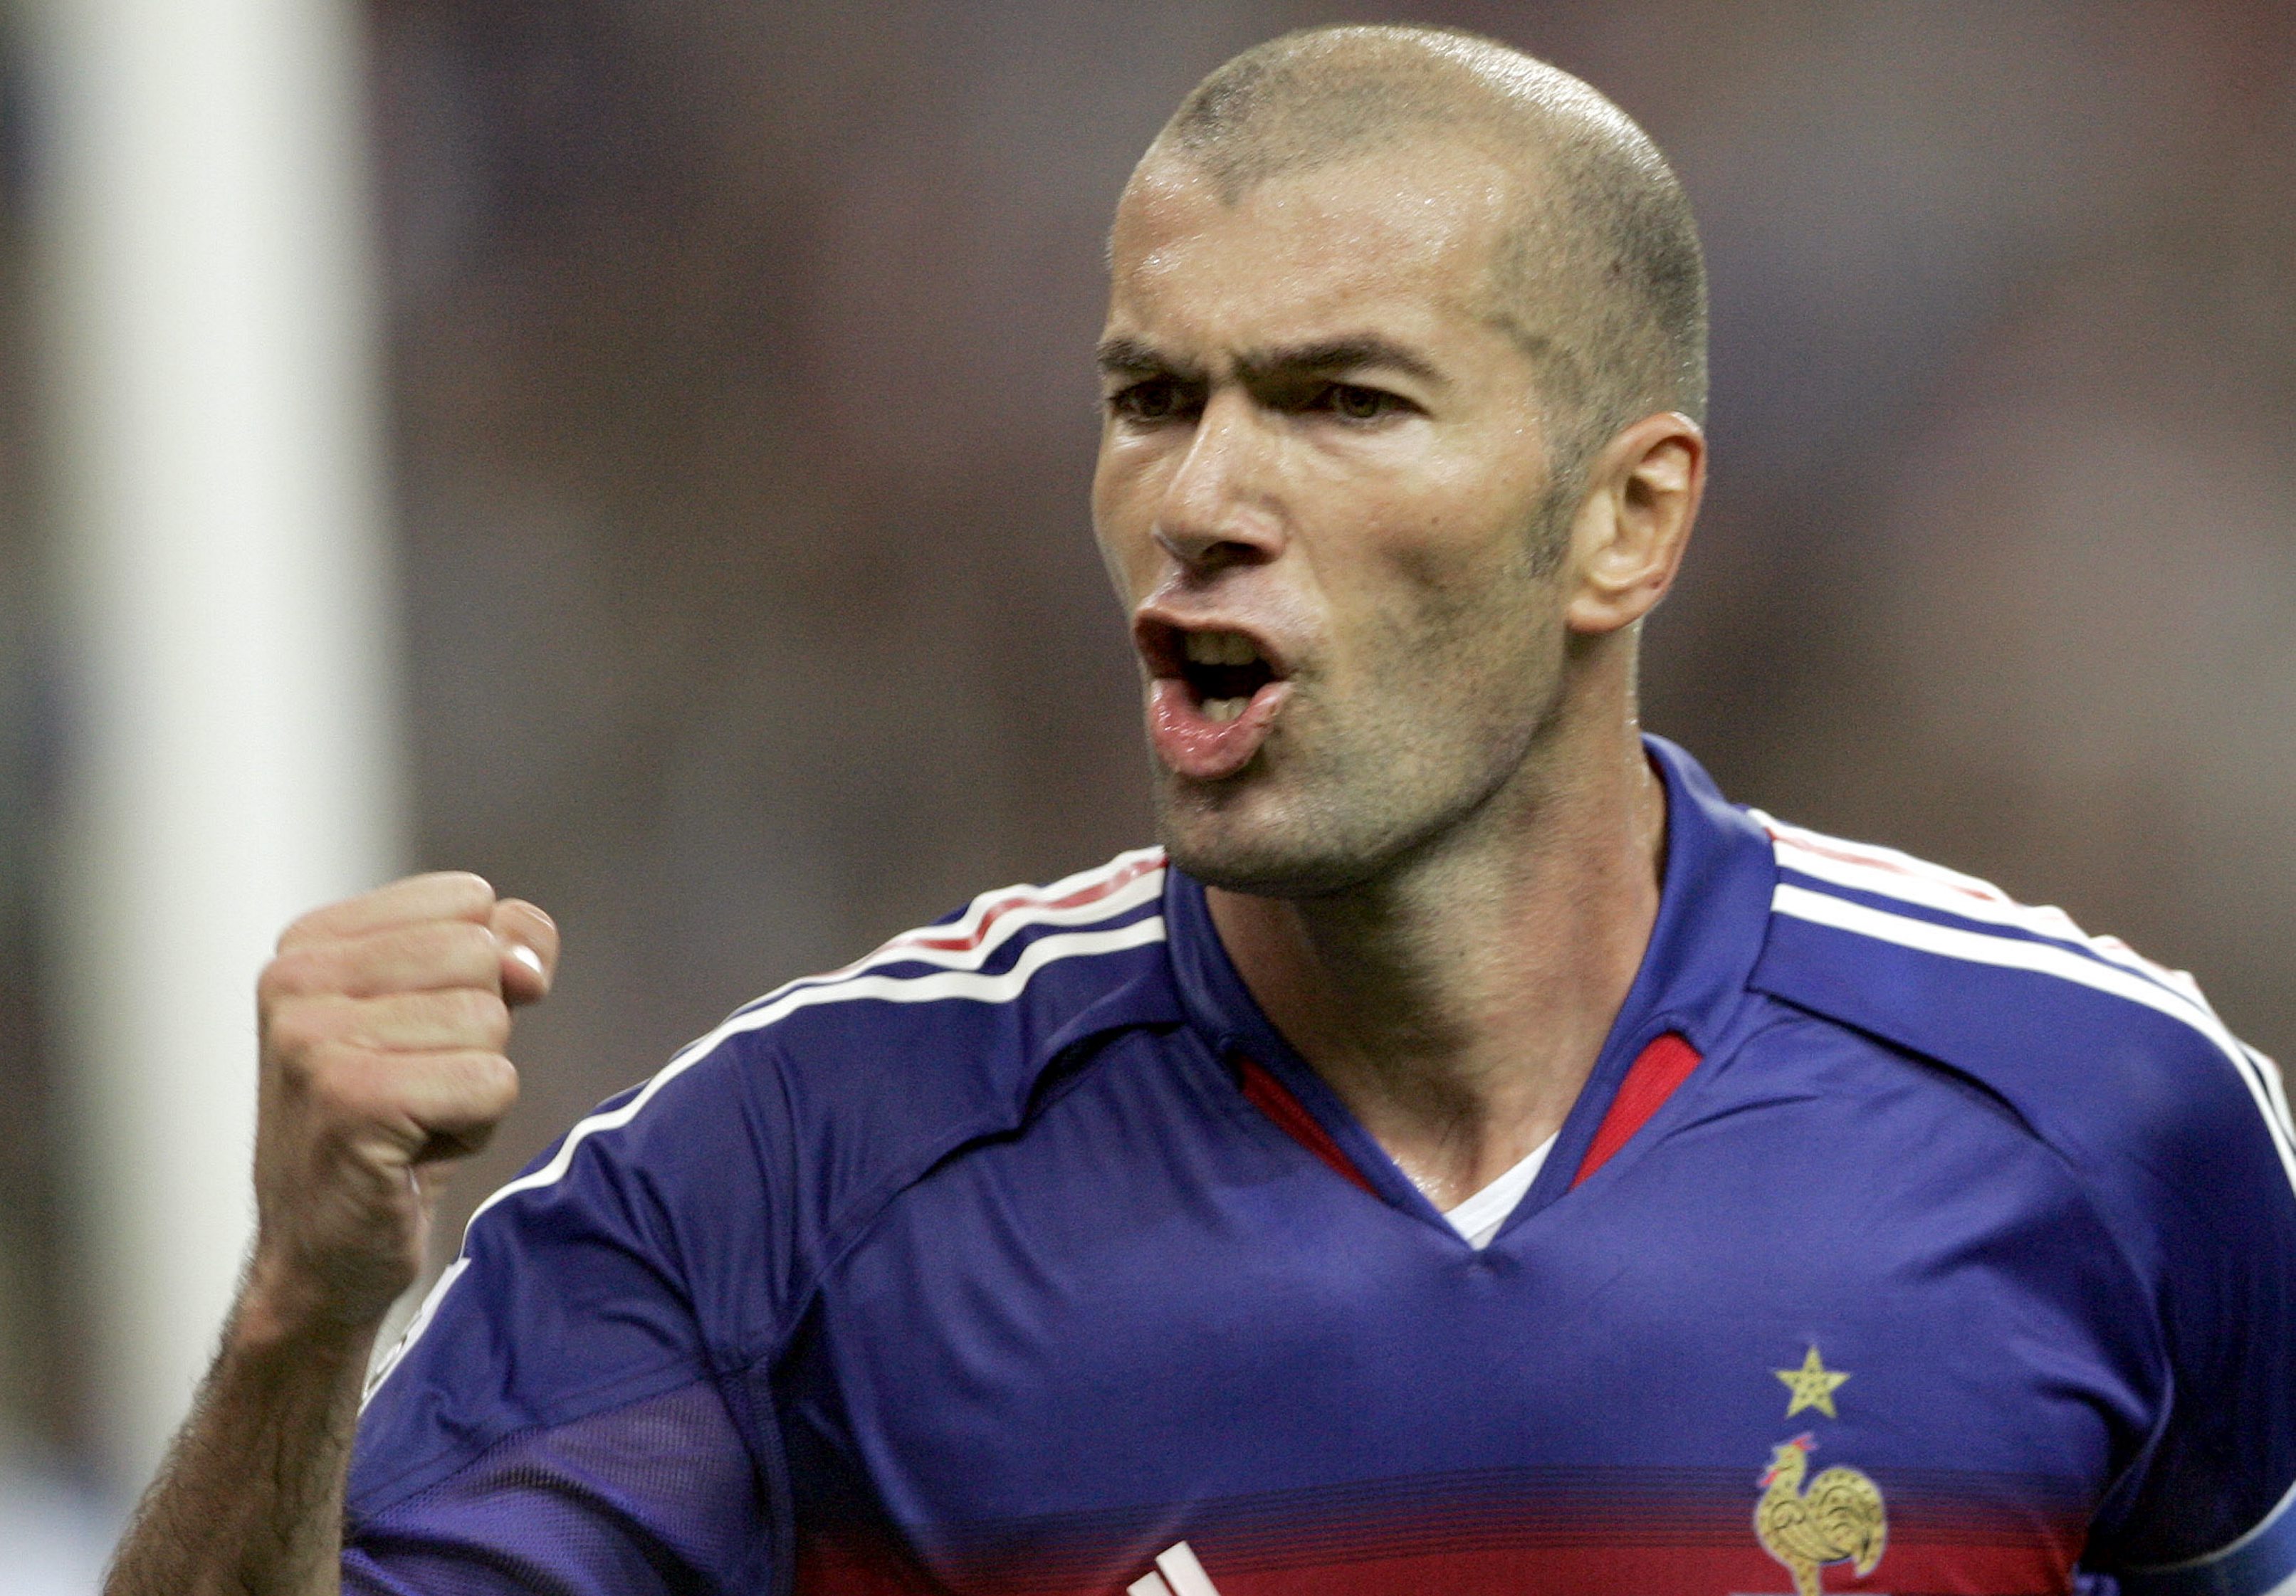 Zidane fyller i dag 40 år. "Zizou" vann de tre största titlarna en fotbollsspelare kan vinna – VM, EM och Champions League.